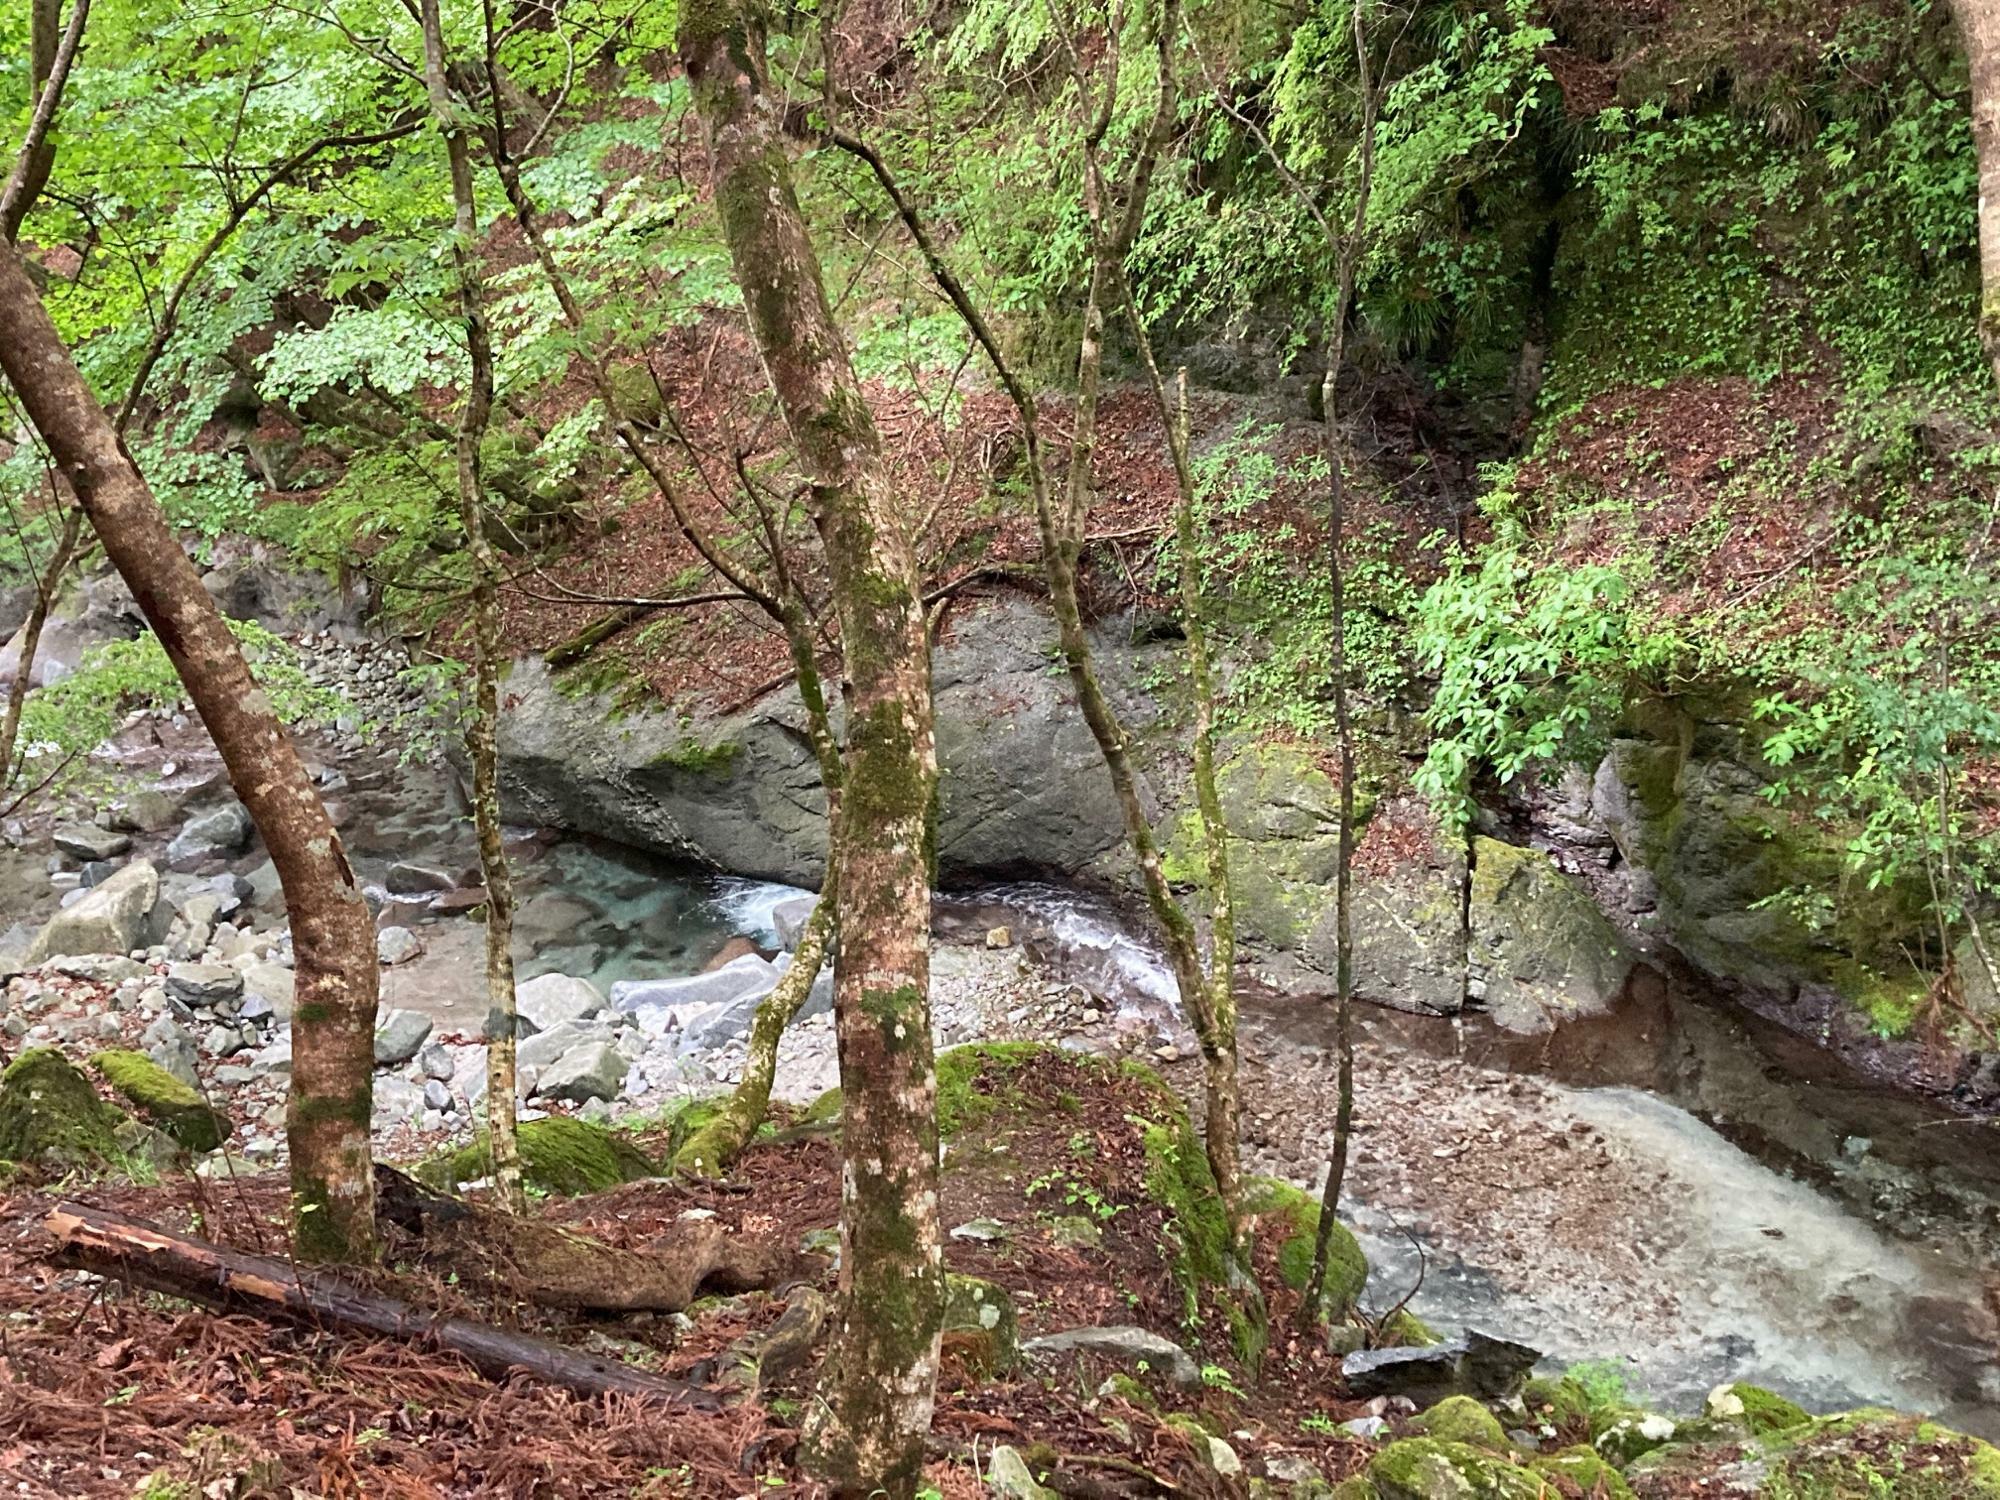 専門のガイドによる案内付きの「森林セラピー」に参加して山を歩いた際に撮影した山北町の上流の川。川幅も狭く、水が澄んでいてとてもきれいだが、大腸菌が含まれる可能性があるためそのまま飲むのはNGとのこと。